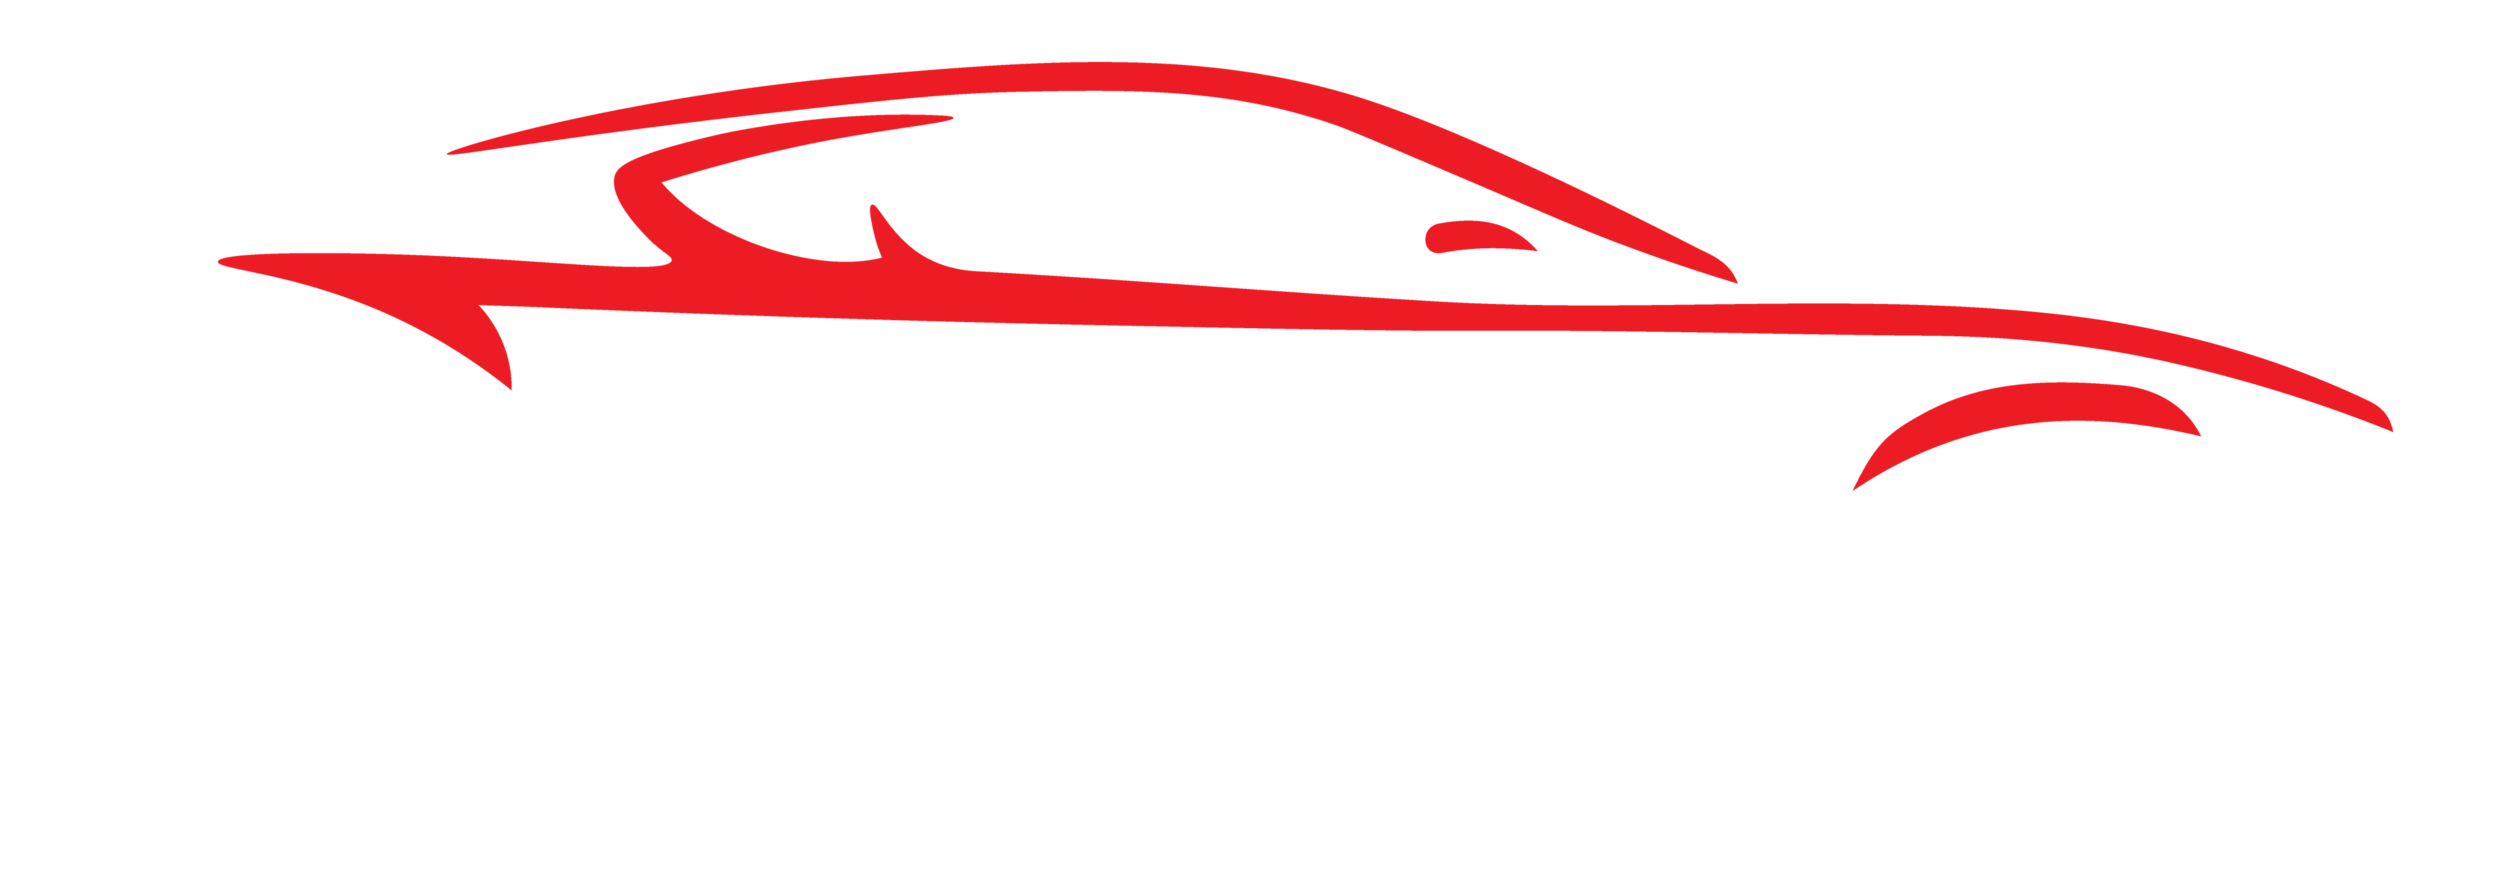 Smithfield Automotive